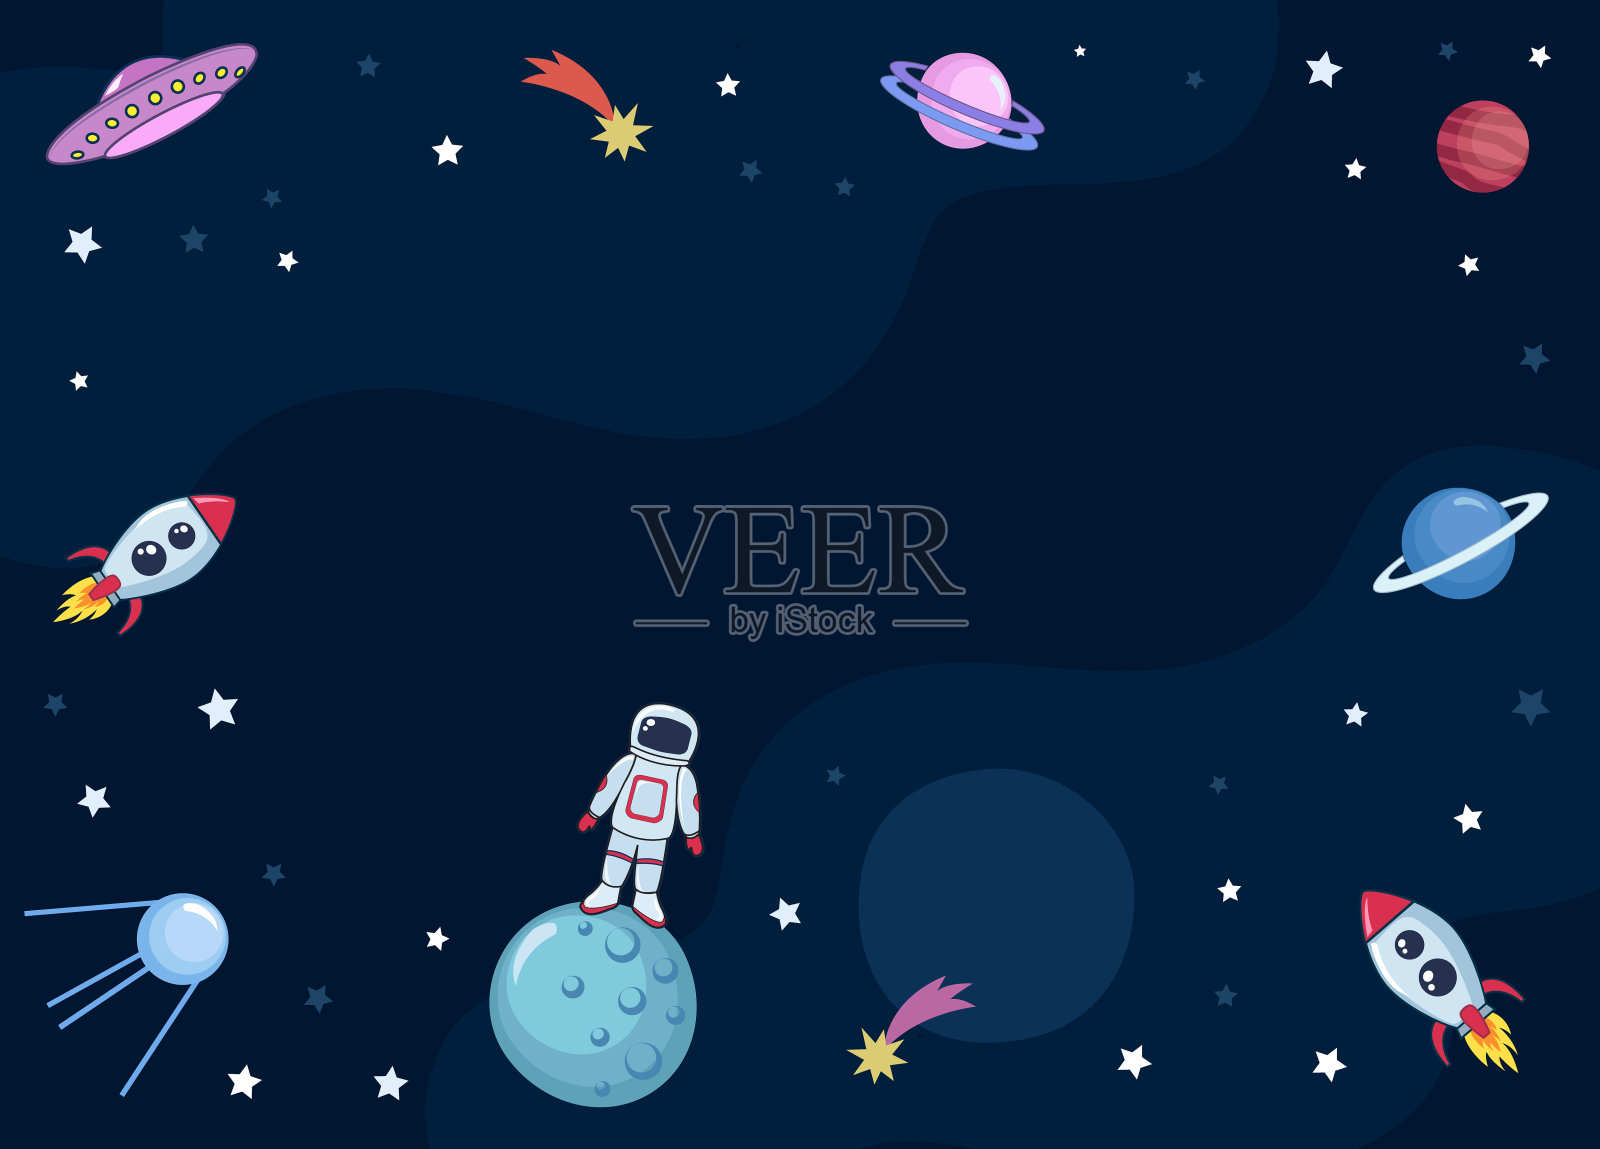 可爱的彩色背景模板与太空火星、星星、行星、ufo、火箭、飞船、卫星和彗星在黑暗的背景。插画图片素材